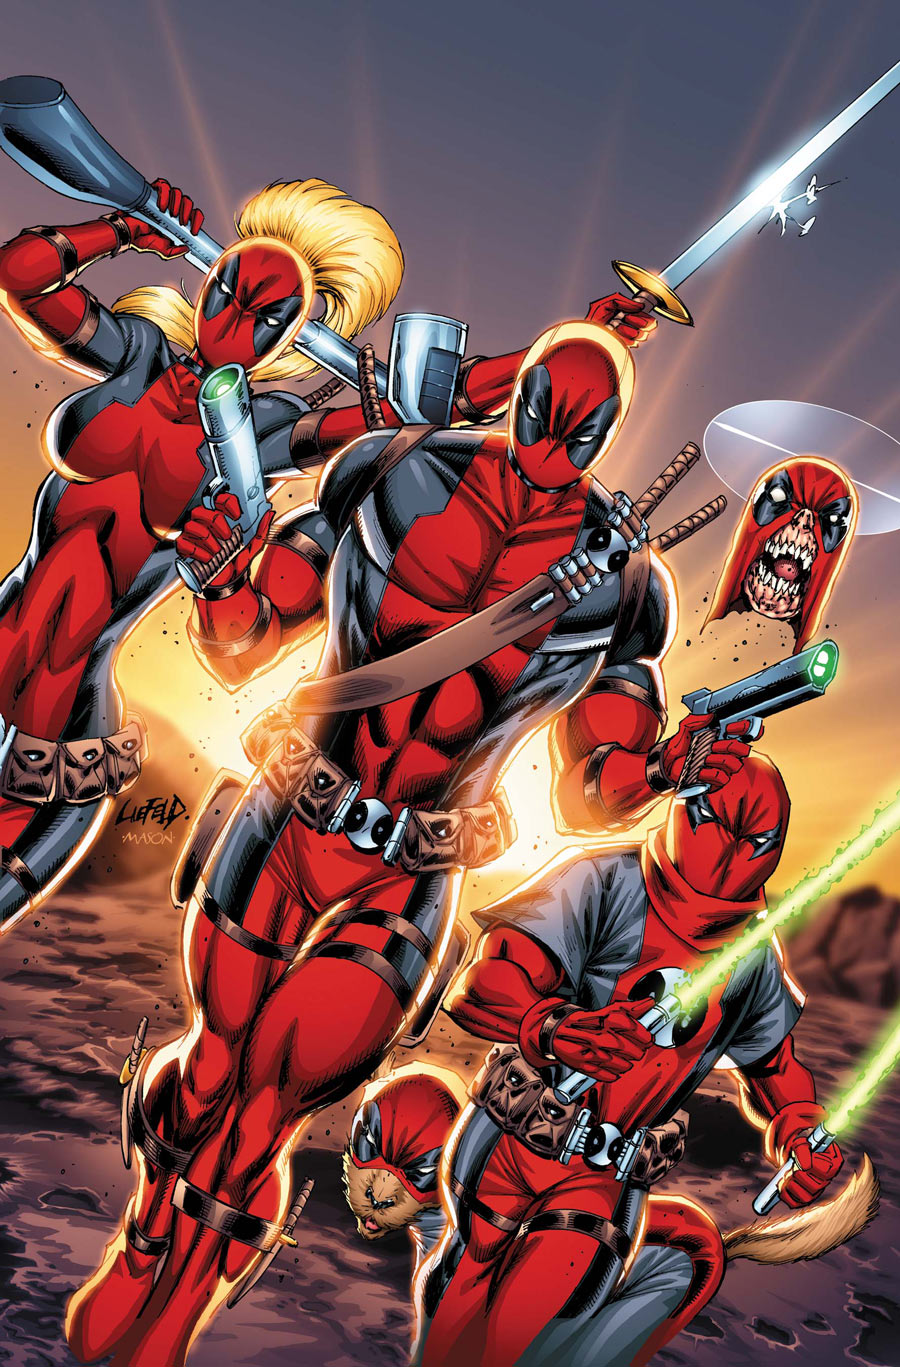 Deadpool Corps #12